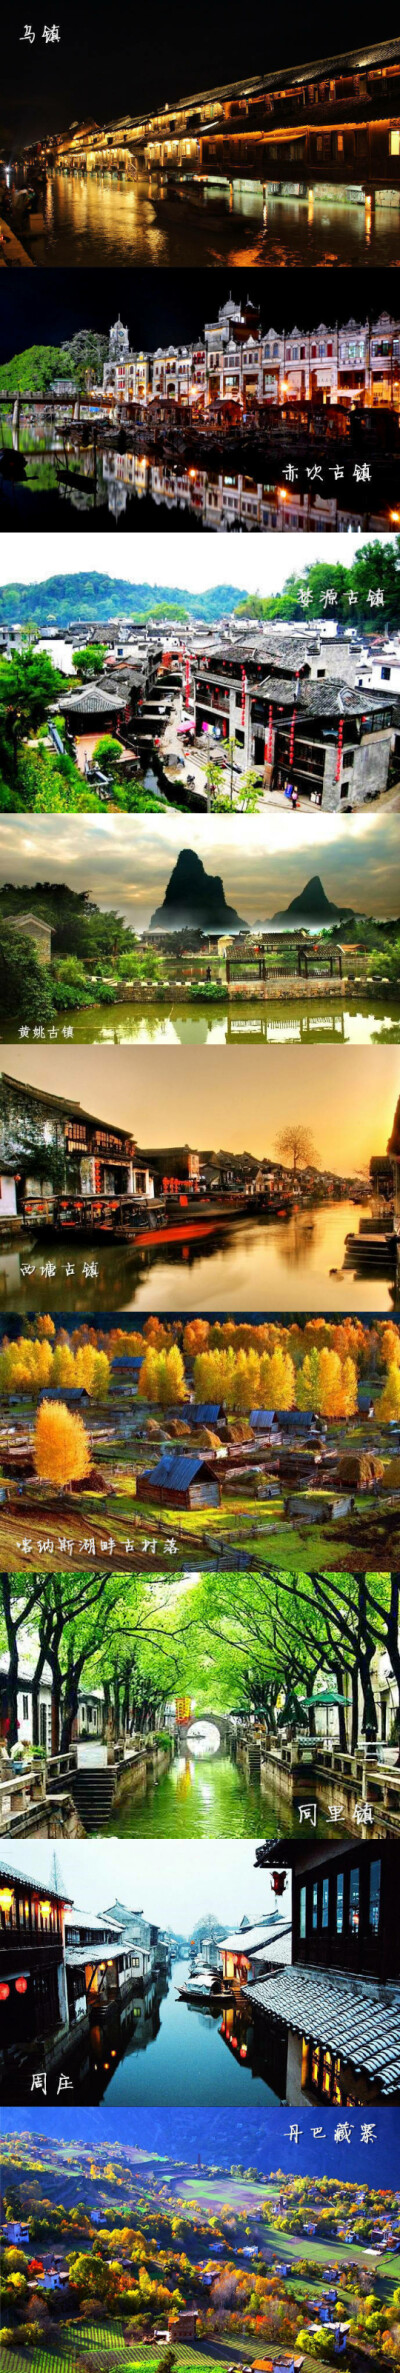 中国九大最美古镇